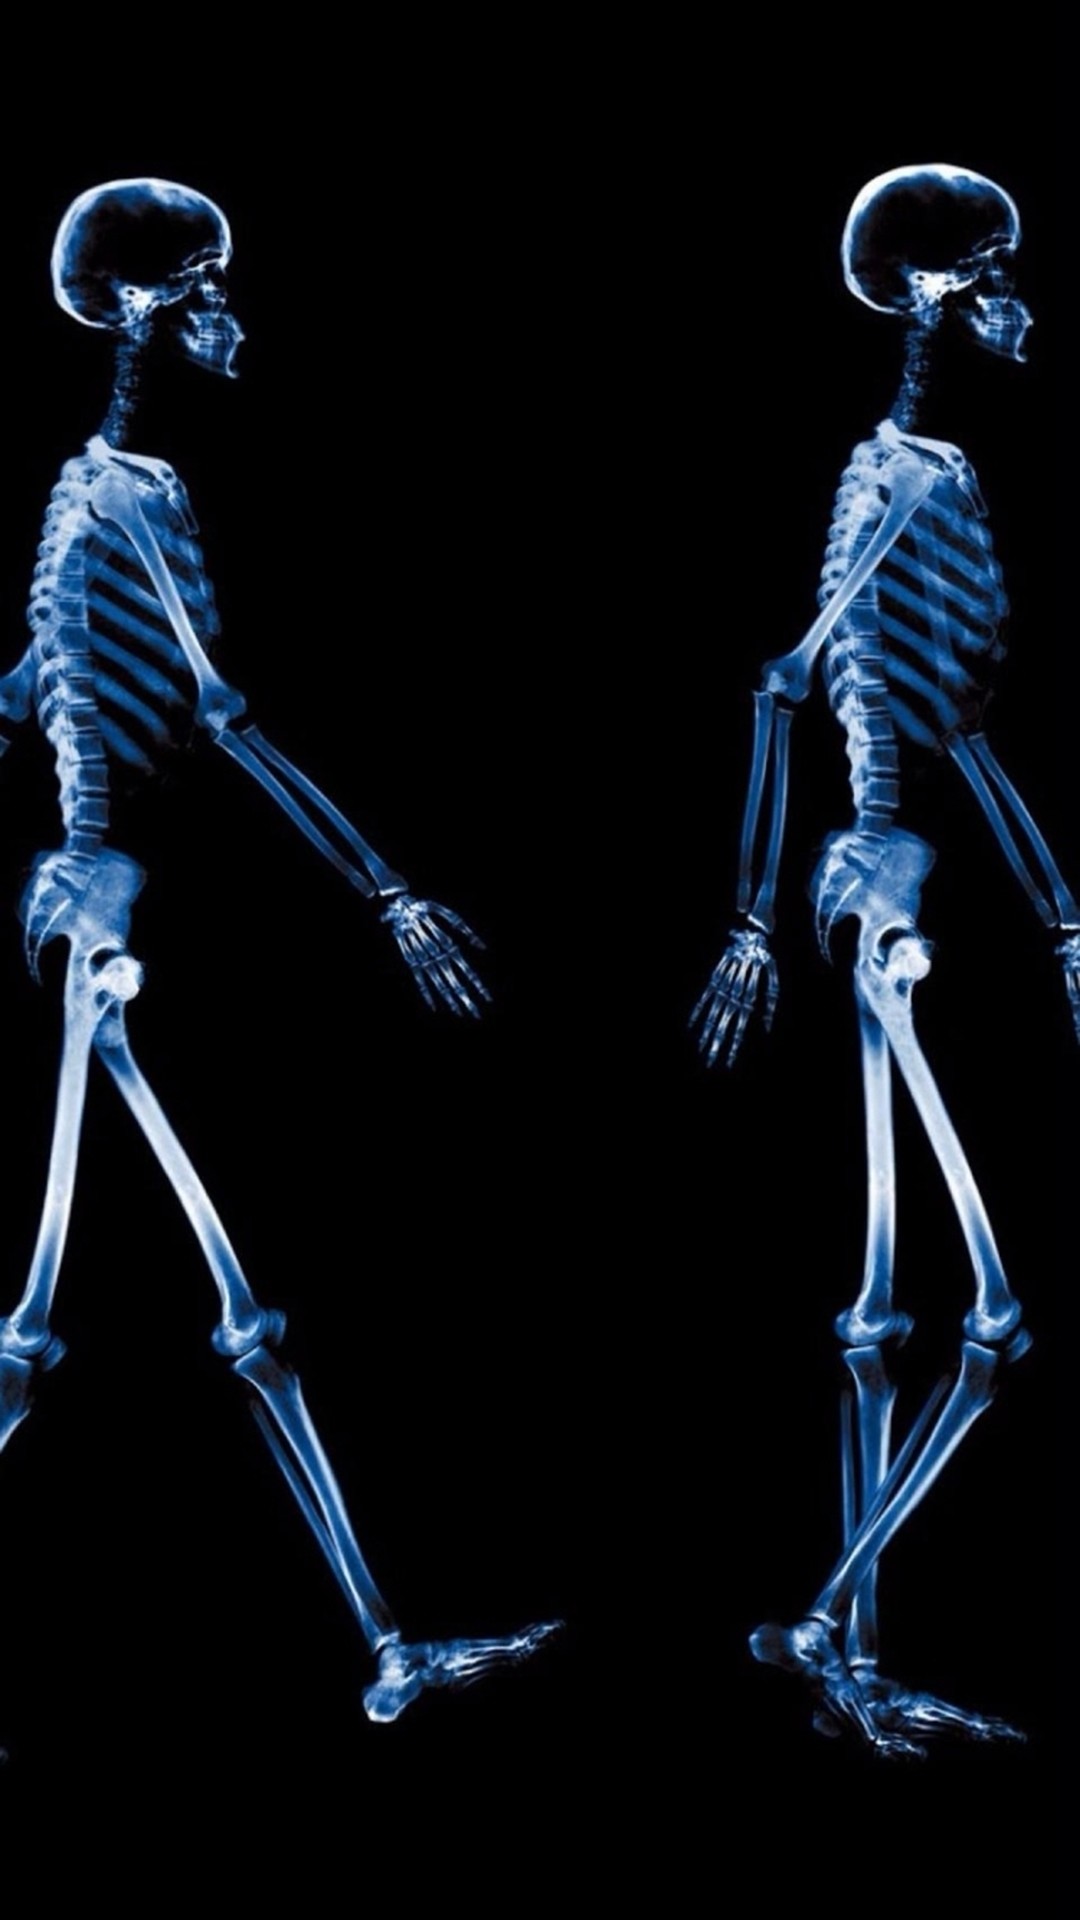 Abstract Xray Walking Human Skeleton Dark #iPhone #wallpaper